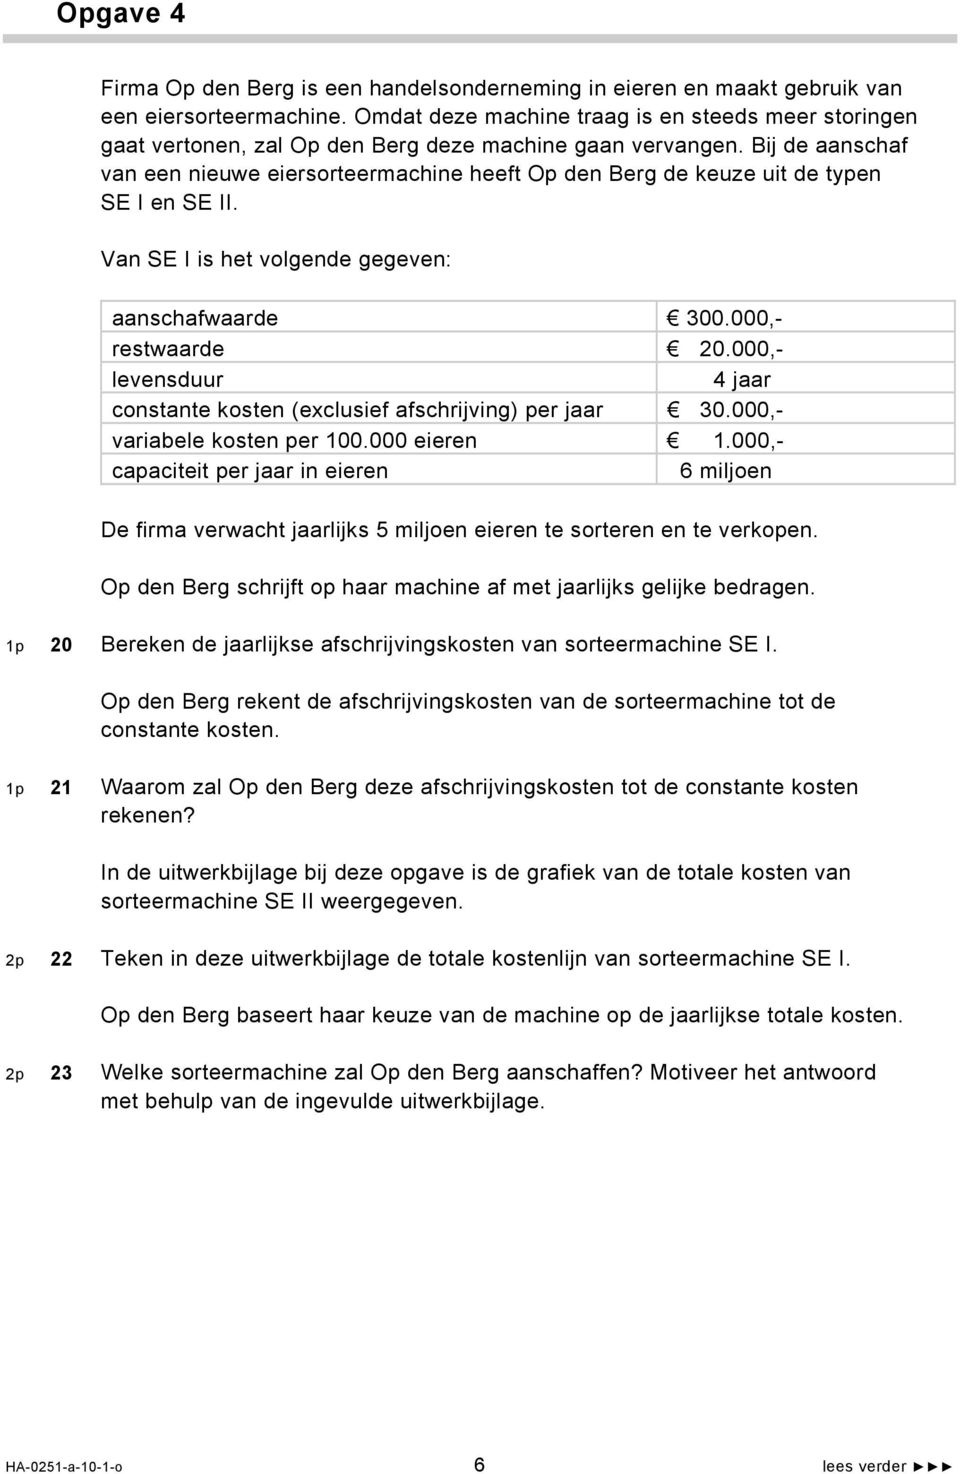 Bij de aanschaf van een nieuwe eiersorteermachine heeft Op den Berg de keuze uit de typen SE I en SE II. Van SE I is het volgende gegeven: aanschafwaarde 300.000,- restwaarde 20.